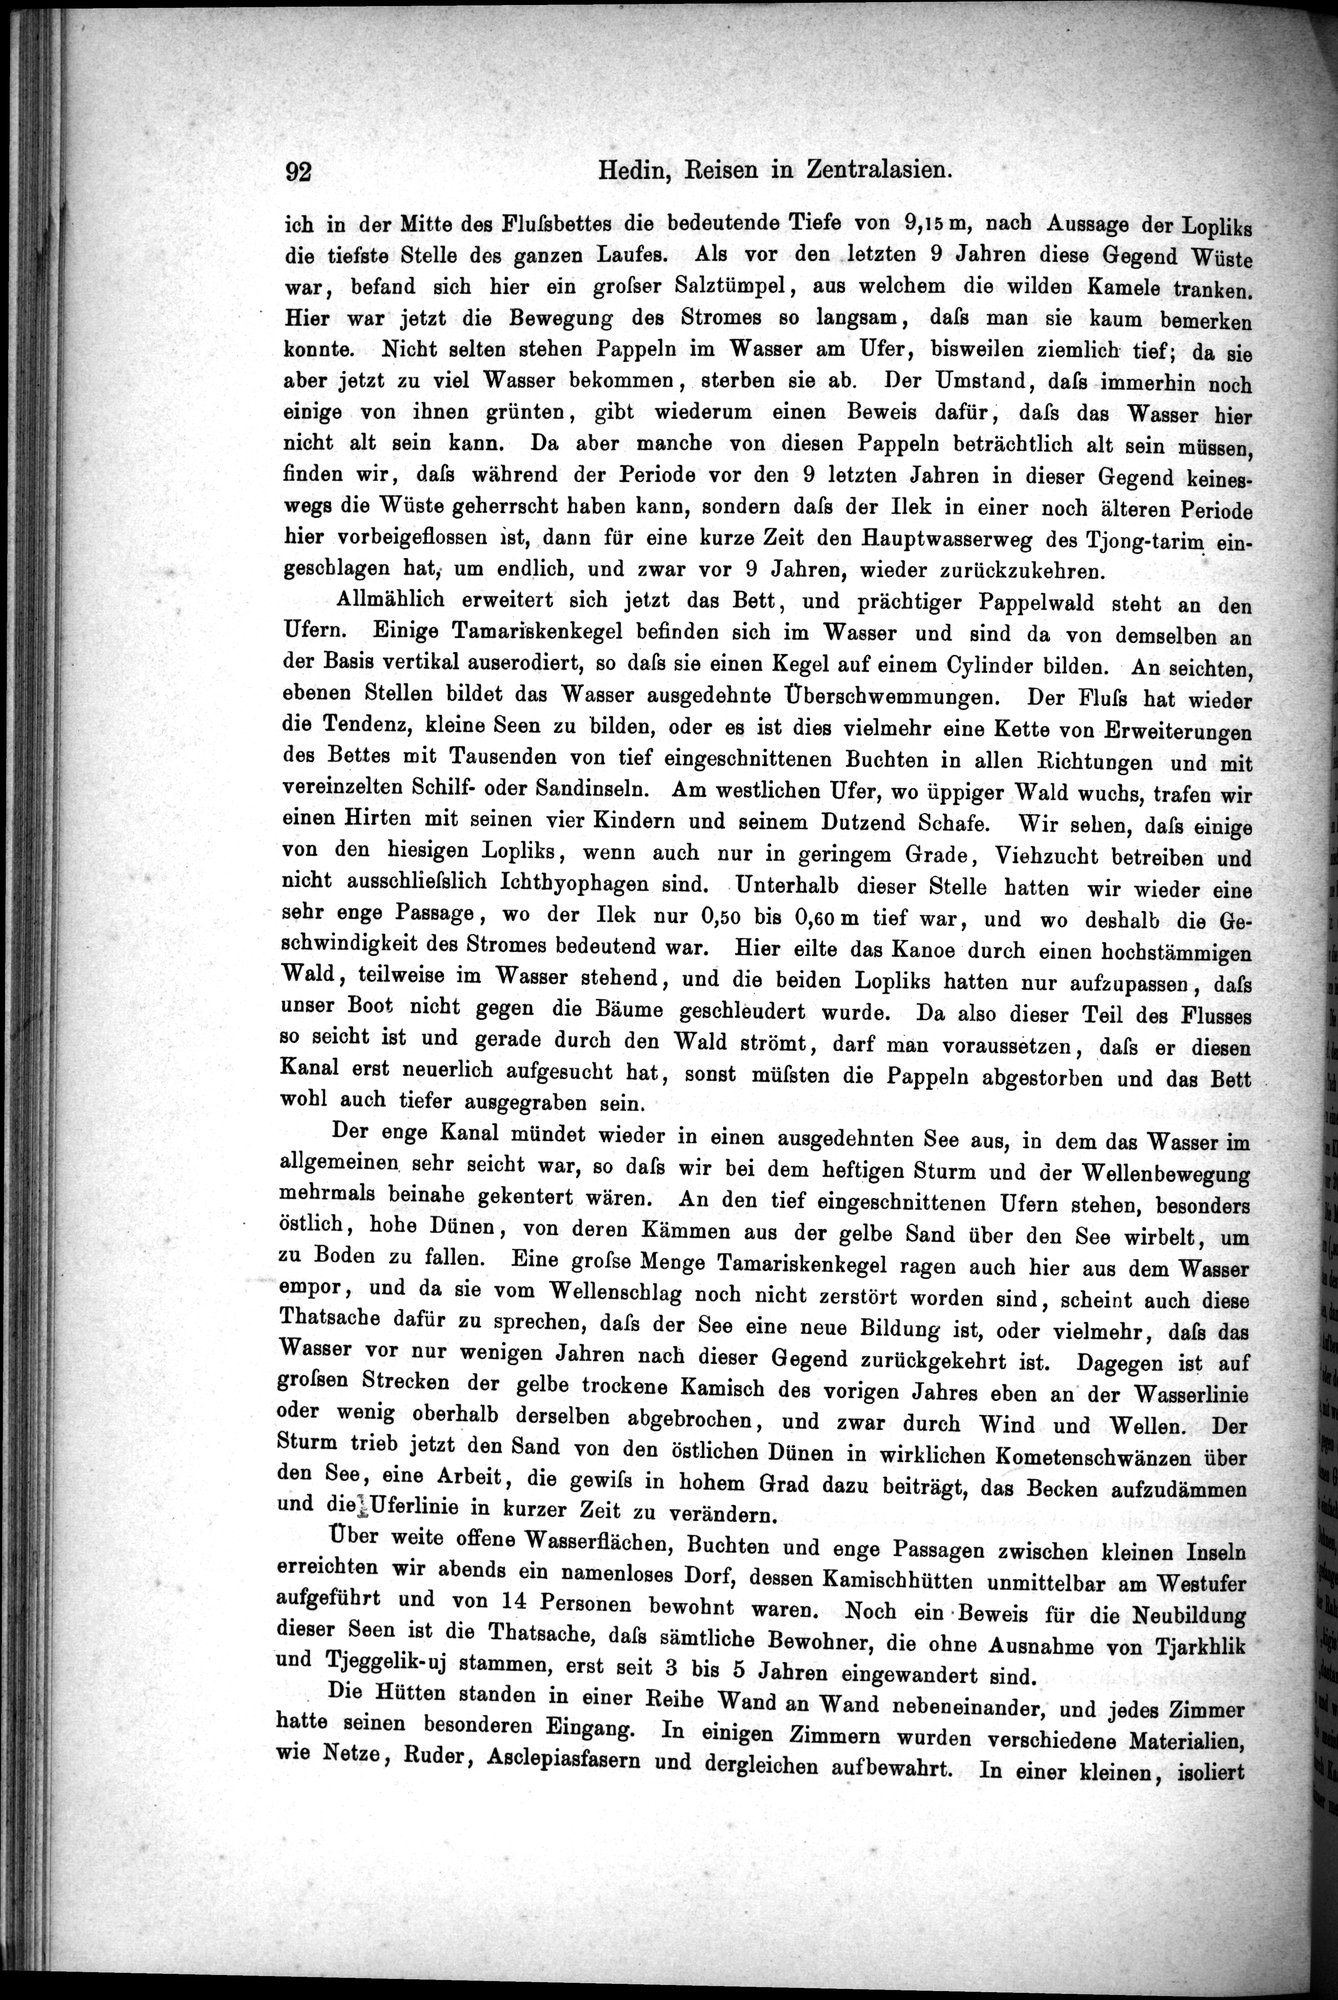 Die Geographische-Wissenschaftlichen Ergebnisse meiner Reisen in Zentralasien, 1894-1897 : vol.1 / Page 104 (Grayscale High Resolution Image)